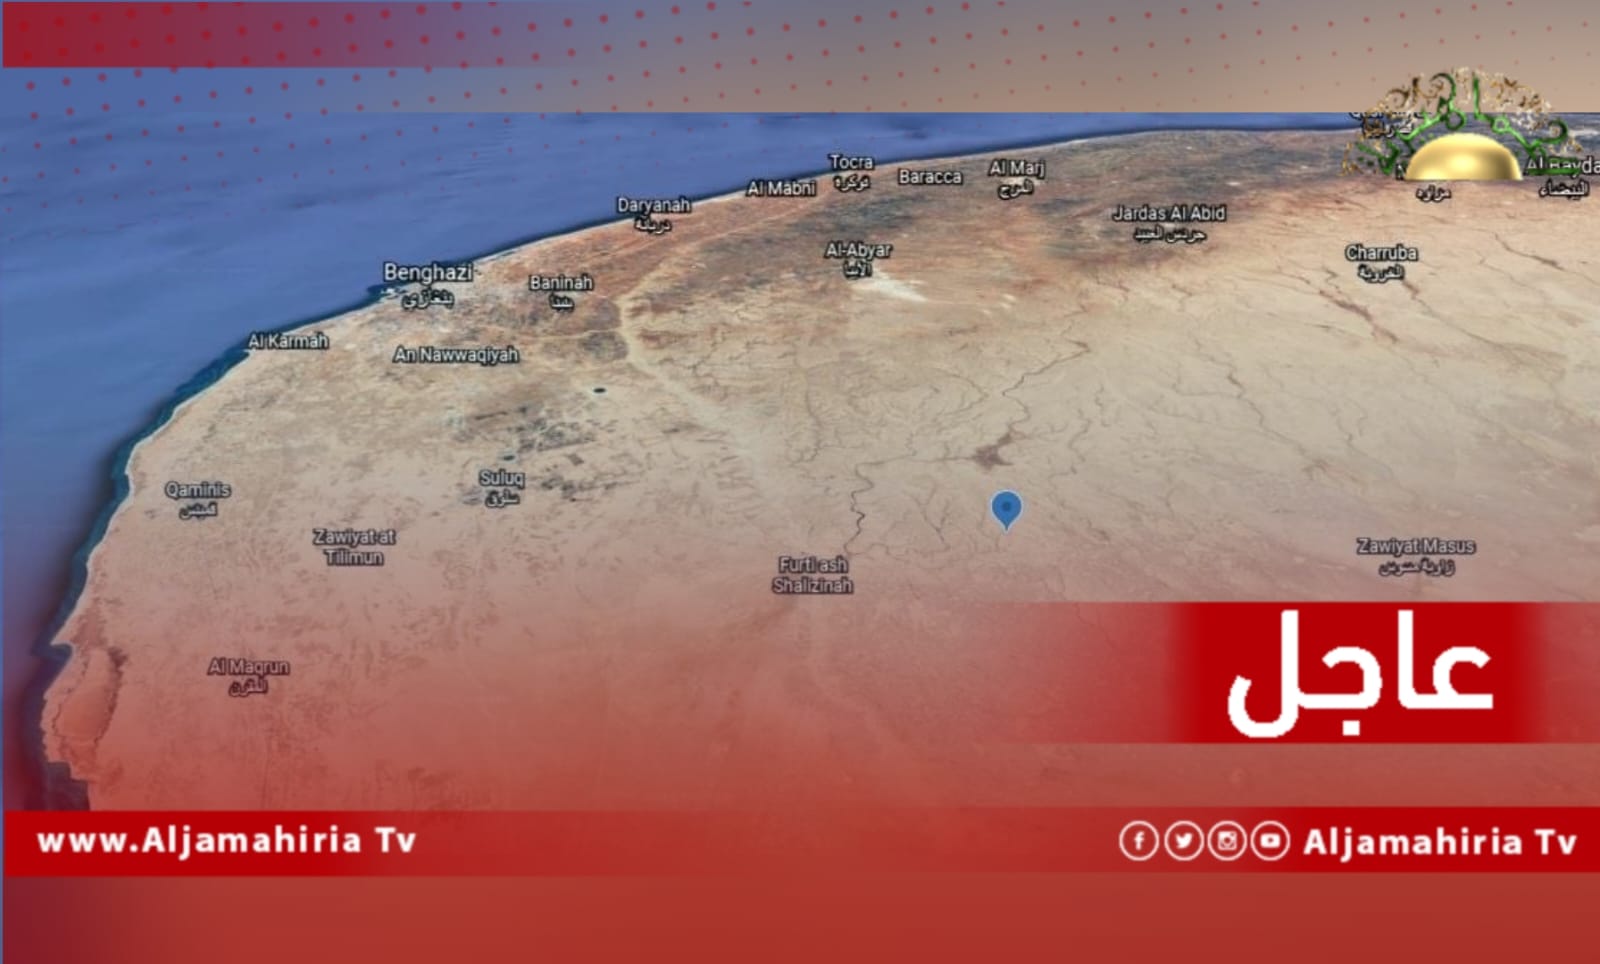 عاجل / أنباء عن هزة أرضية شعر بها سكان مدينة بنغازي قبل قليل